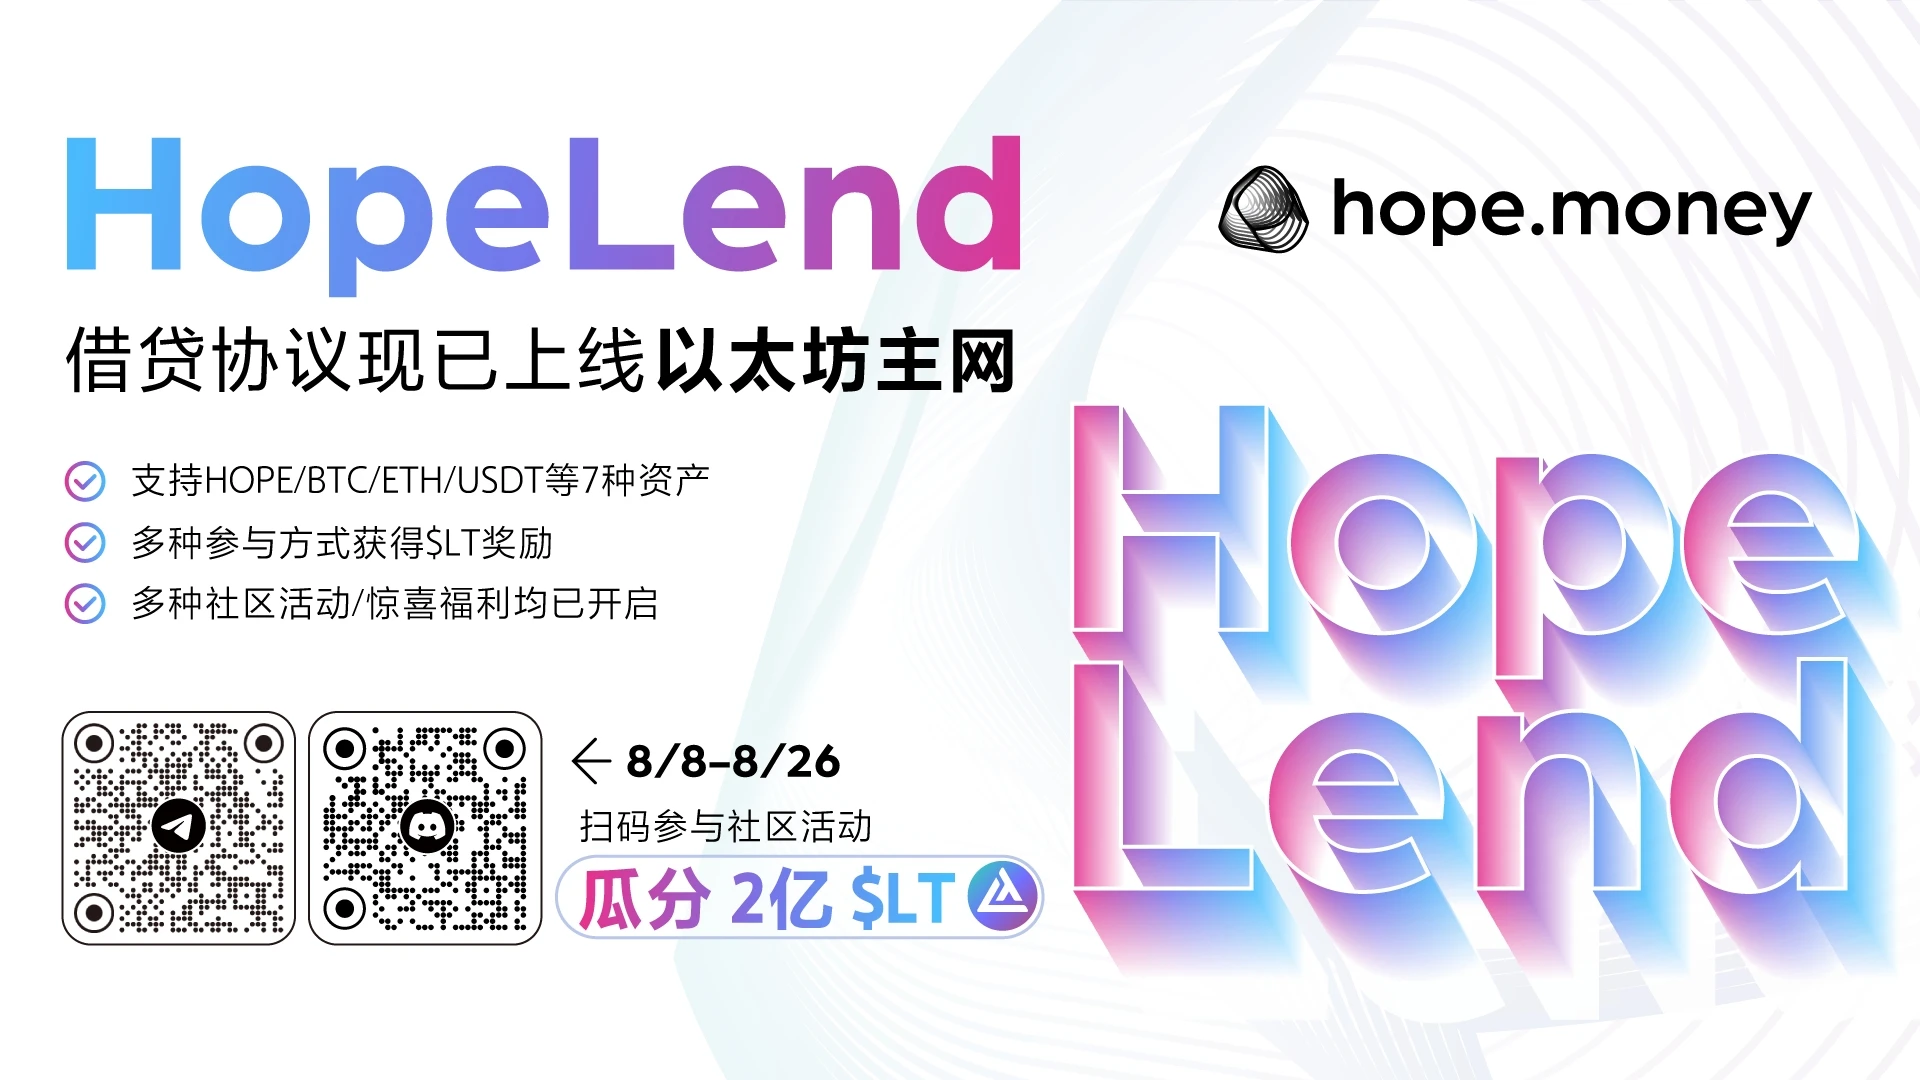 HopeLend主网上线：以更高资金效率参与Hope.money